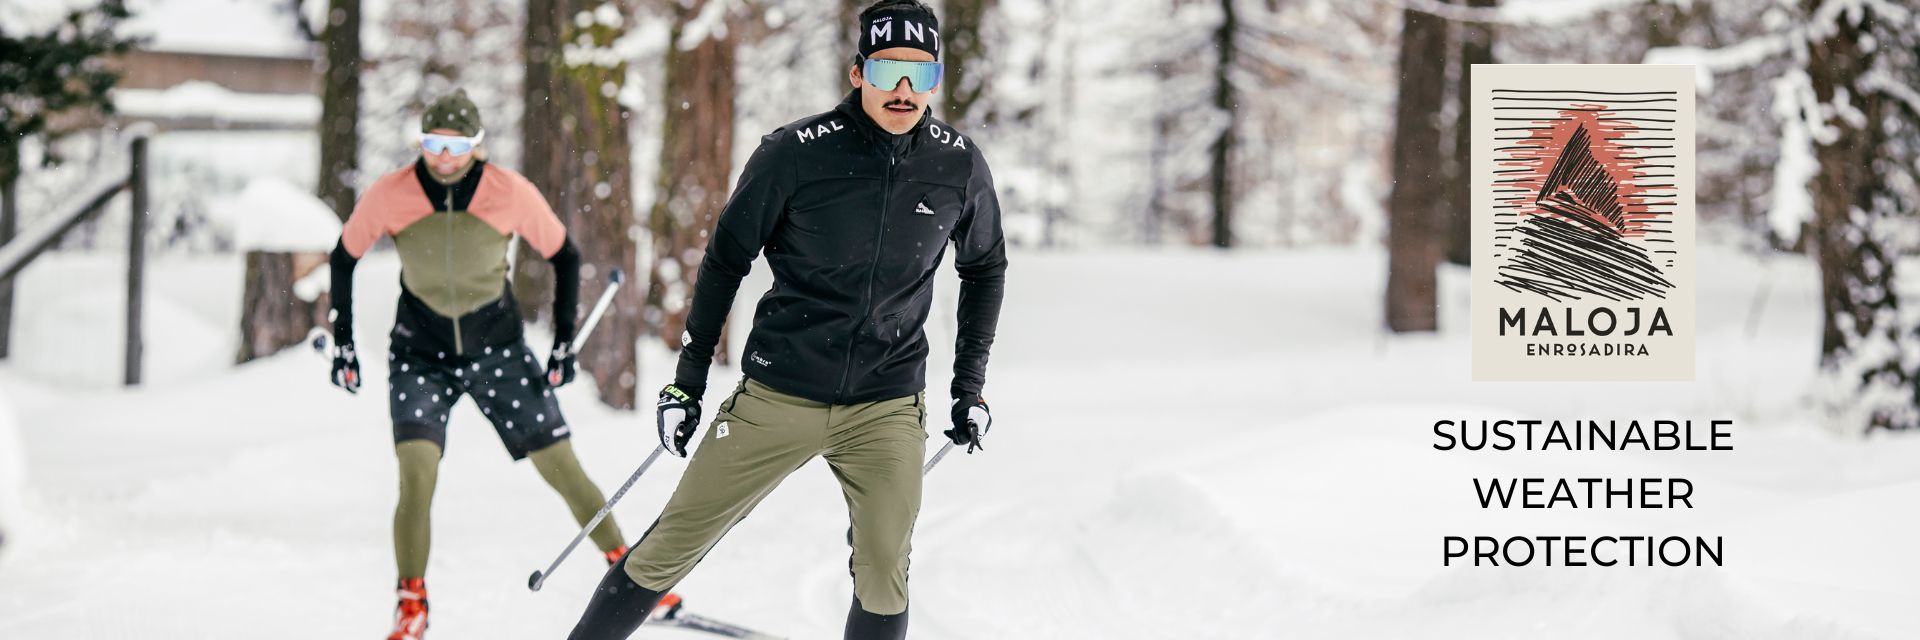 Maloja nordic ski apparel